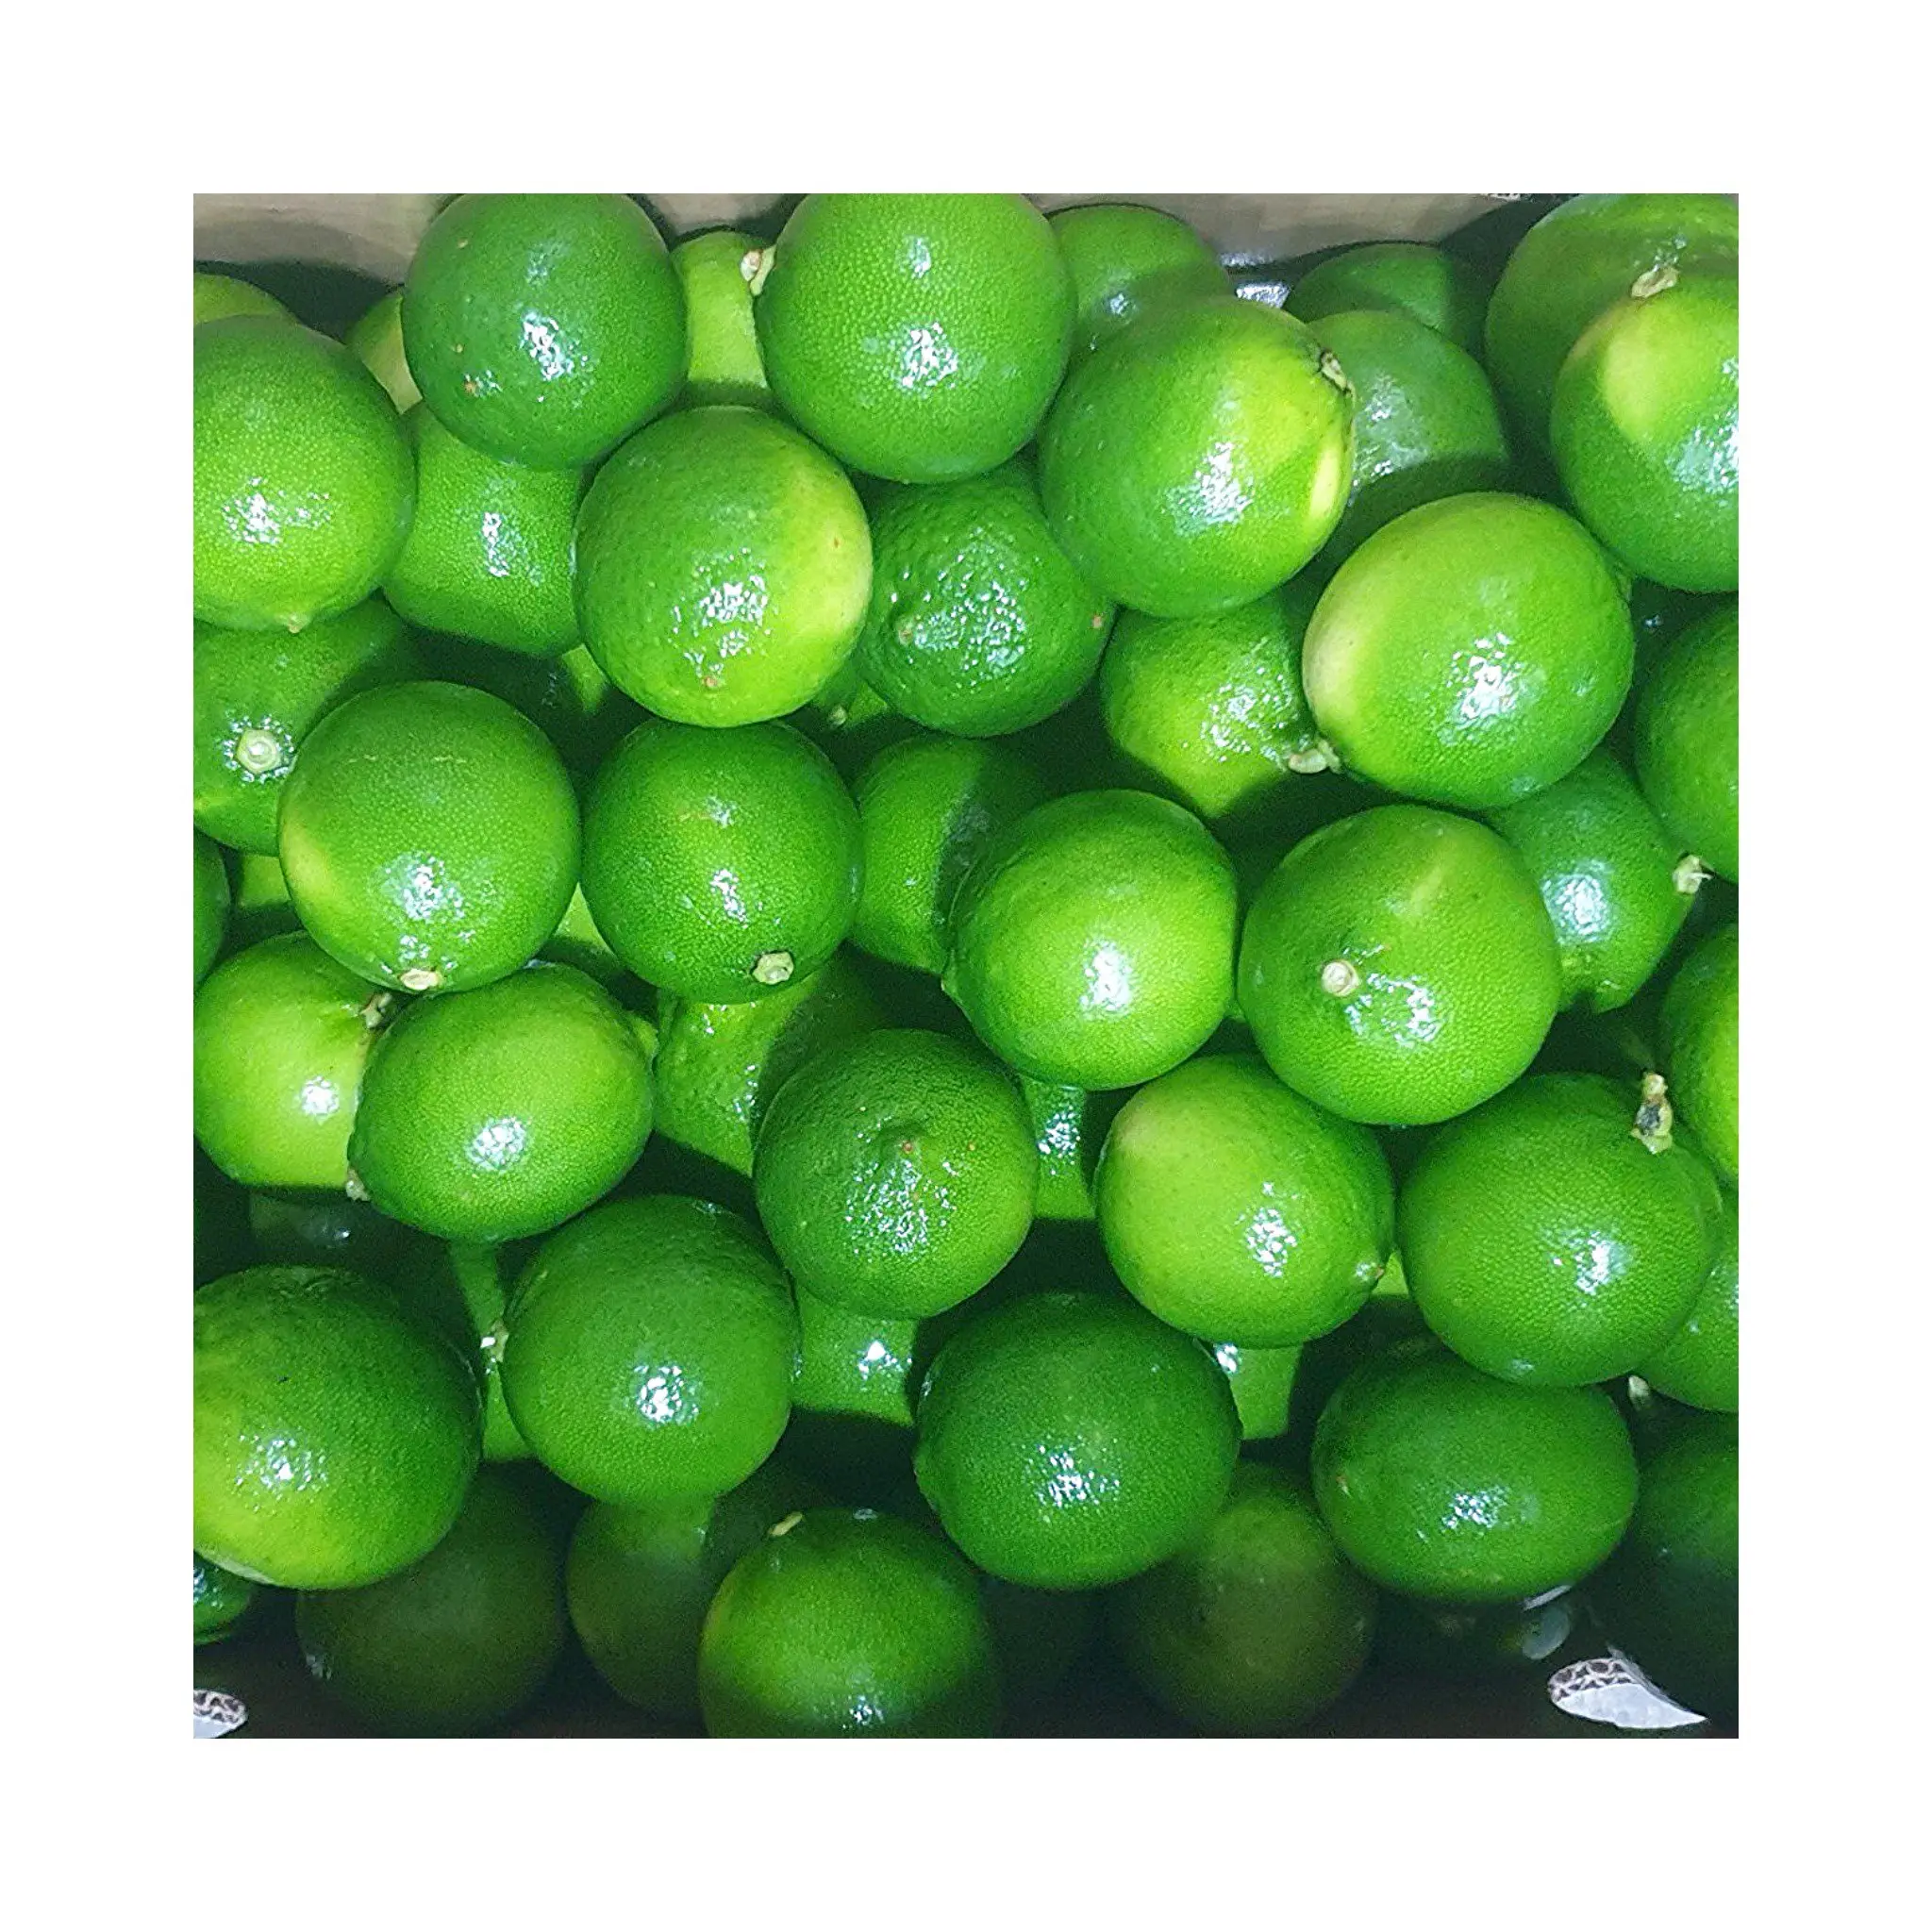 Lime fresco senza semi limone Elysia 0084789310321 Vietnam stile imballaggio 5Kg Per scatola con colore verde acido naturale T/T, L/C 4 up Cm